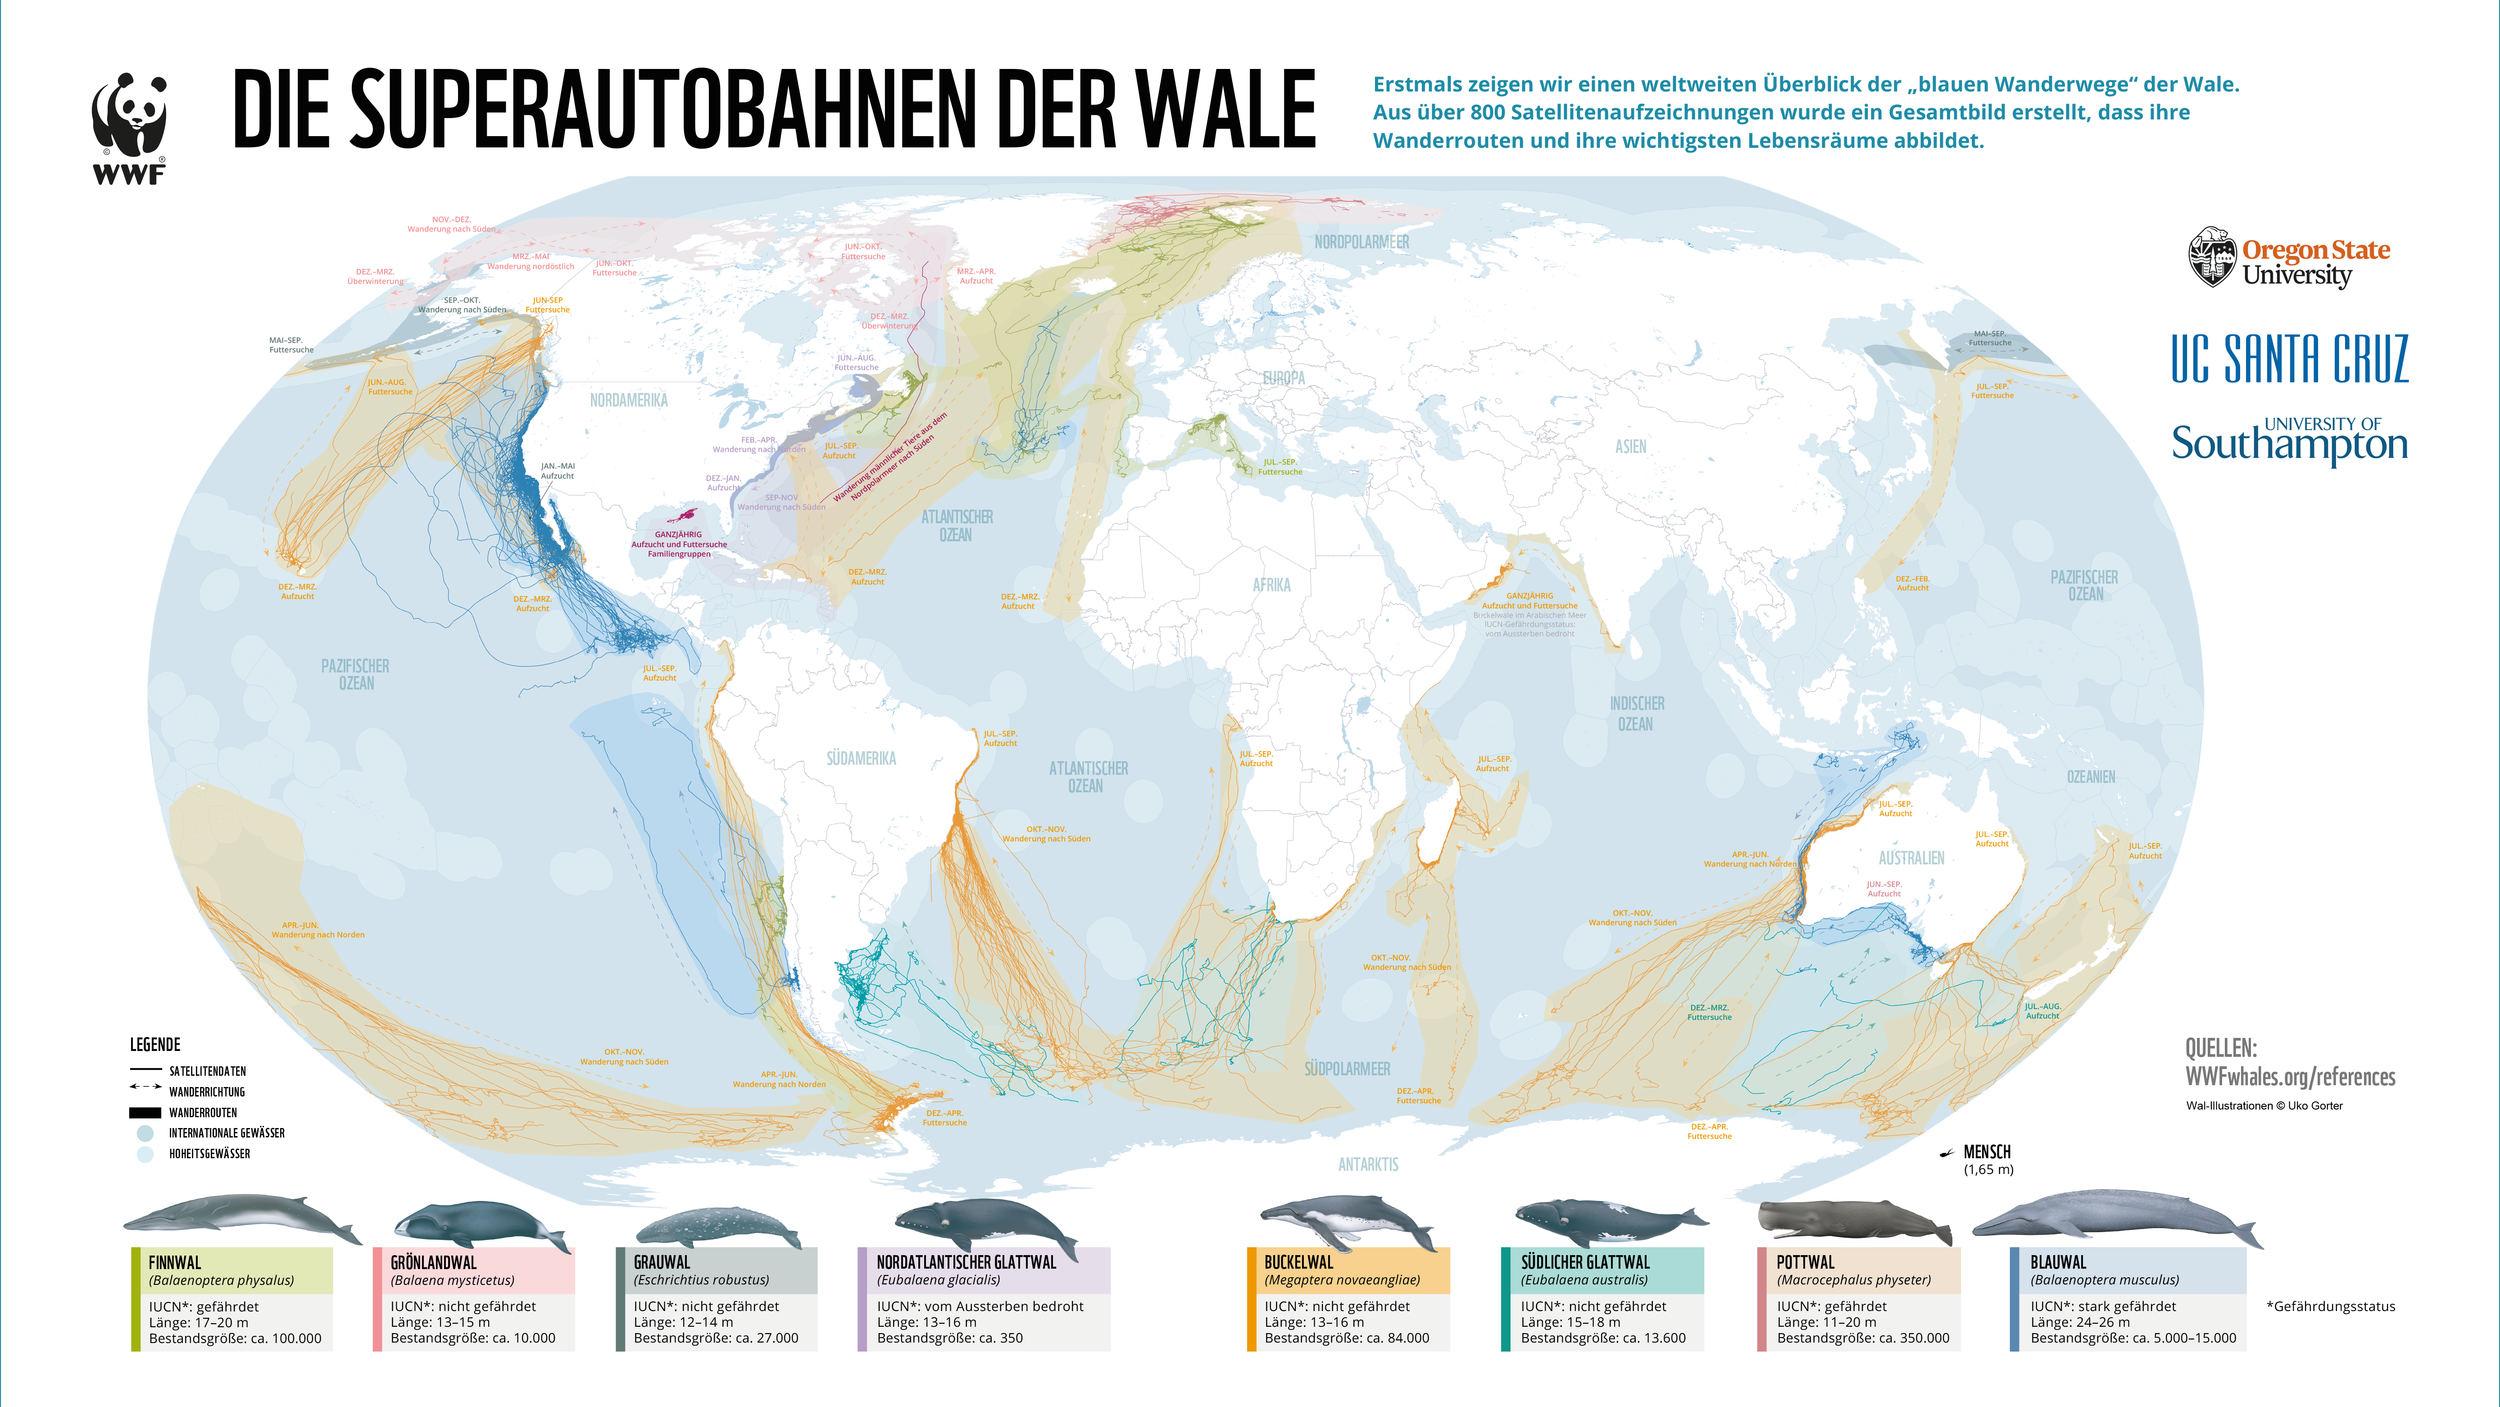 Erstmals zeigt der WWF einen weltweiten Überblick über die „Superautobahnen der Wale“. 